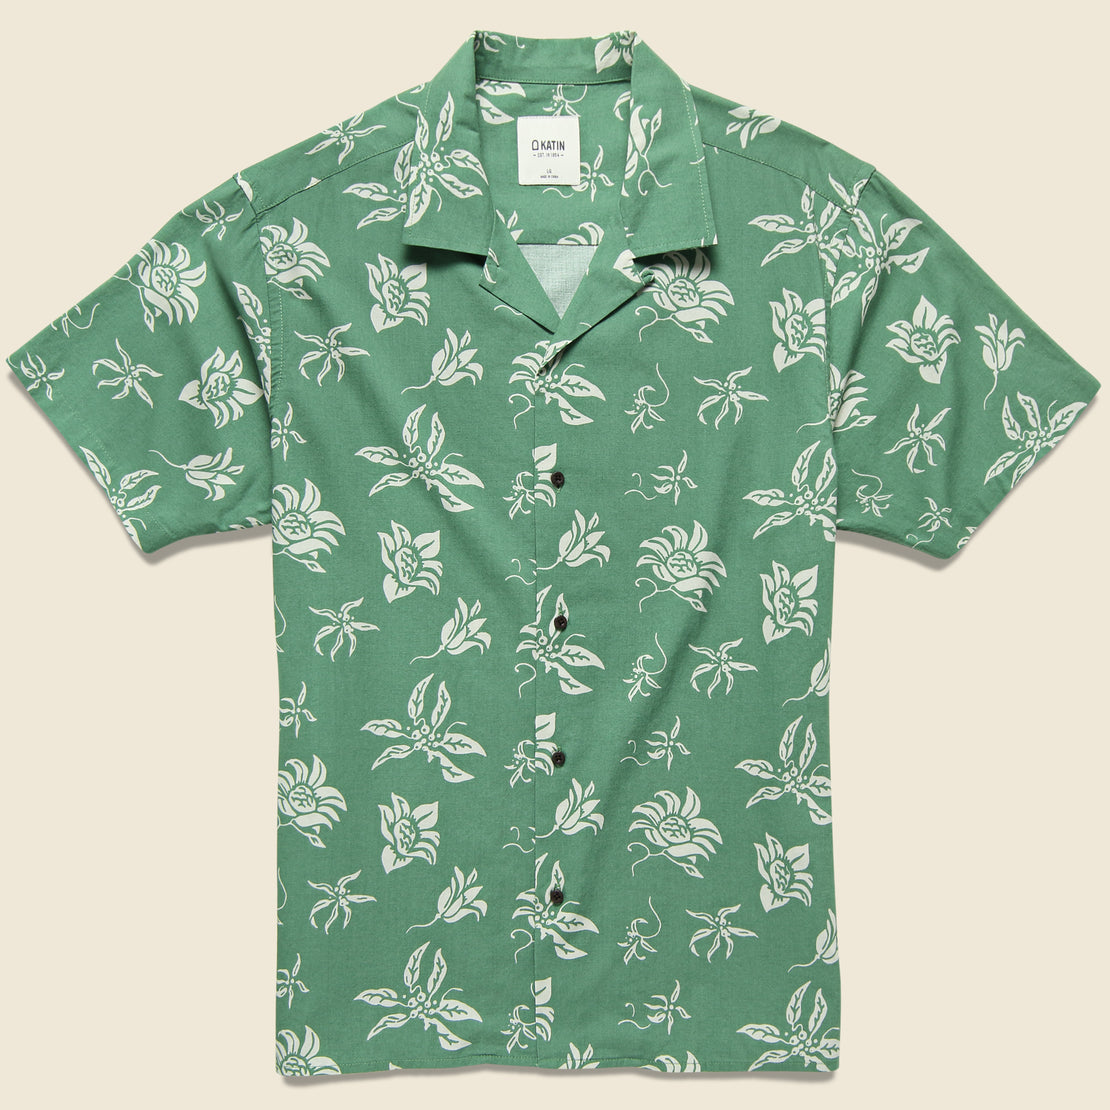 Katin Haiku Aloha Camp Shirt - Herb